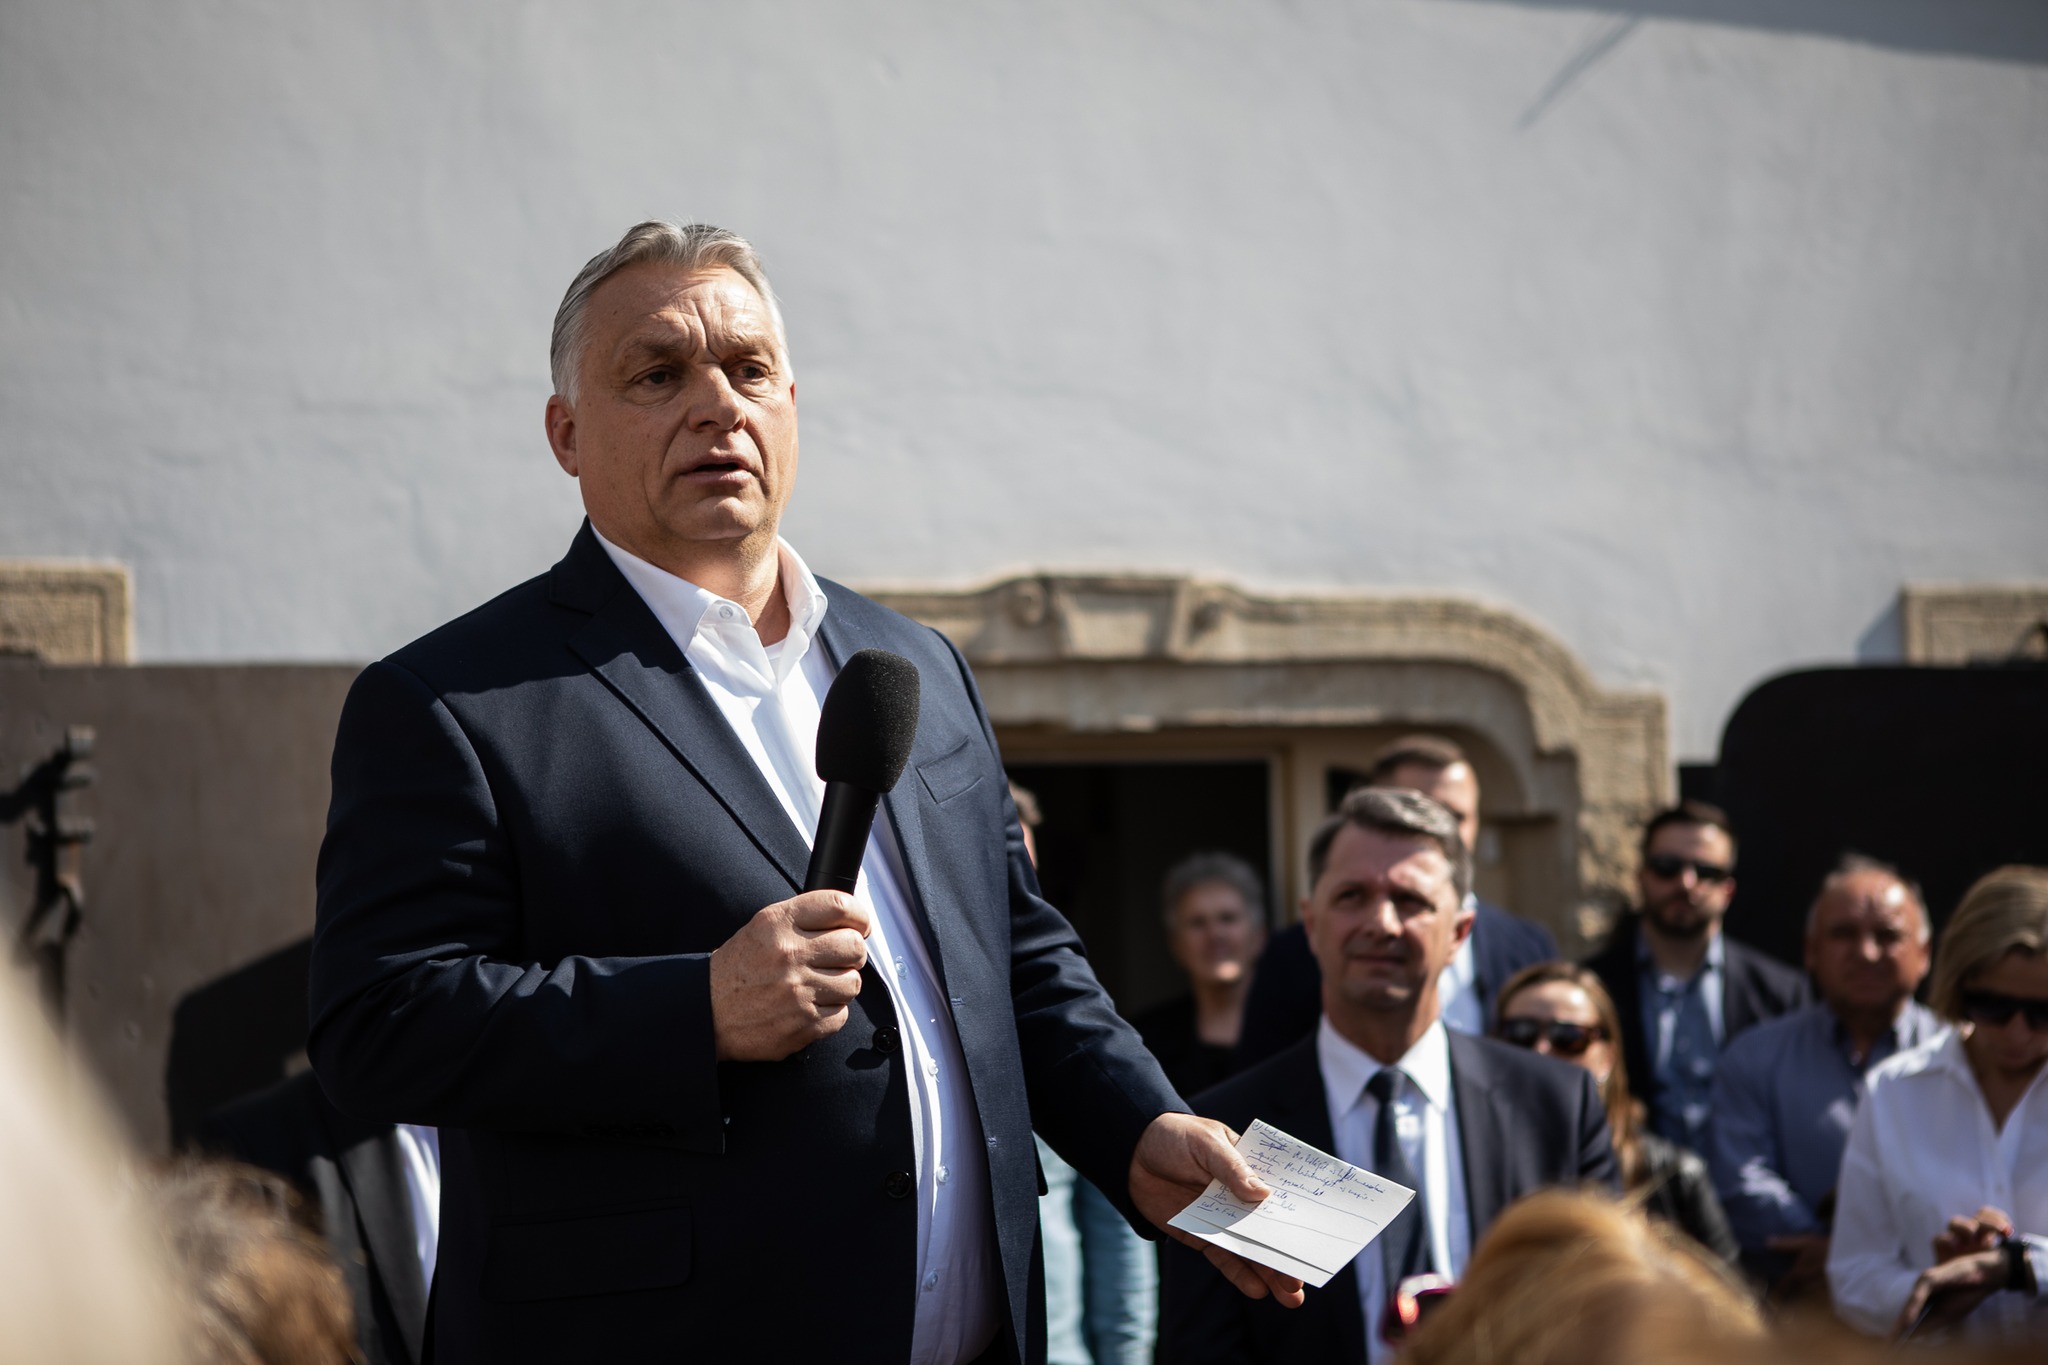 „Előre - hátra” - Orbán minden szlogent felír magának, nehogy elfelejtse felmondani őket a kampánygyűléseken